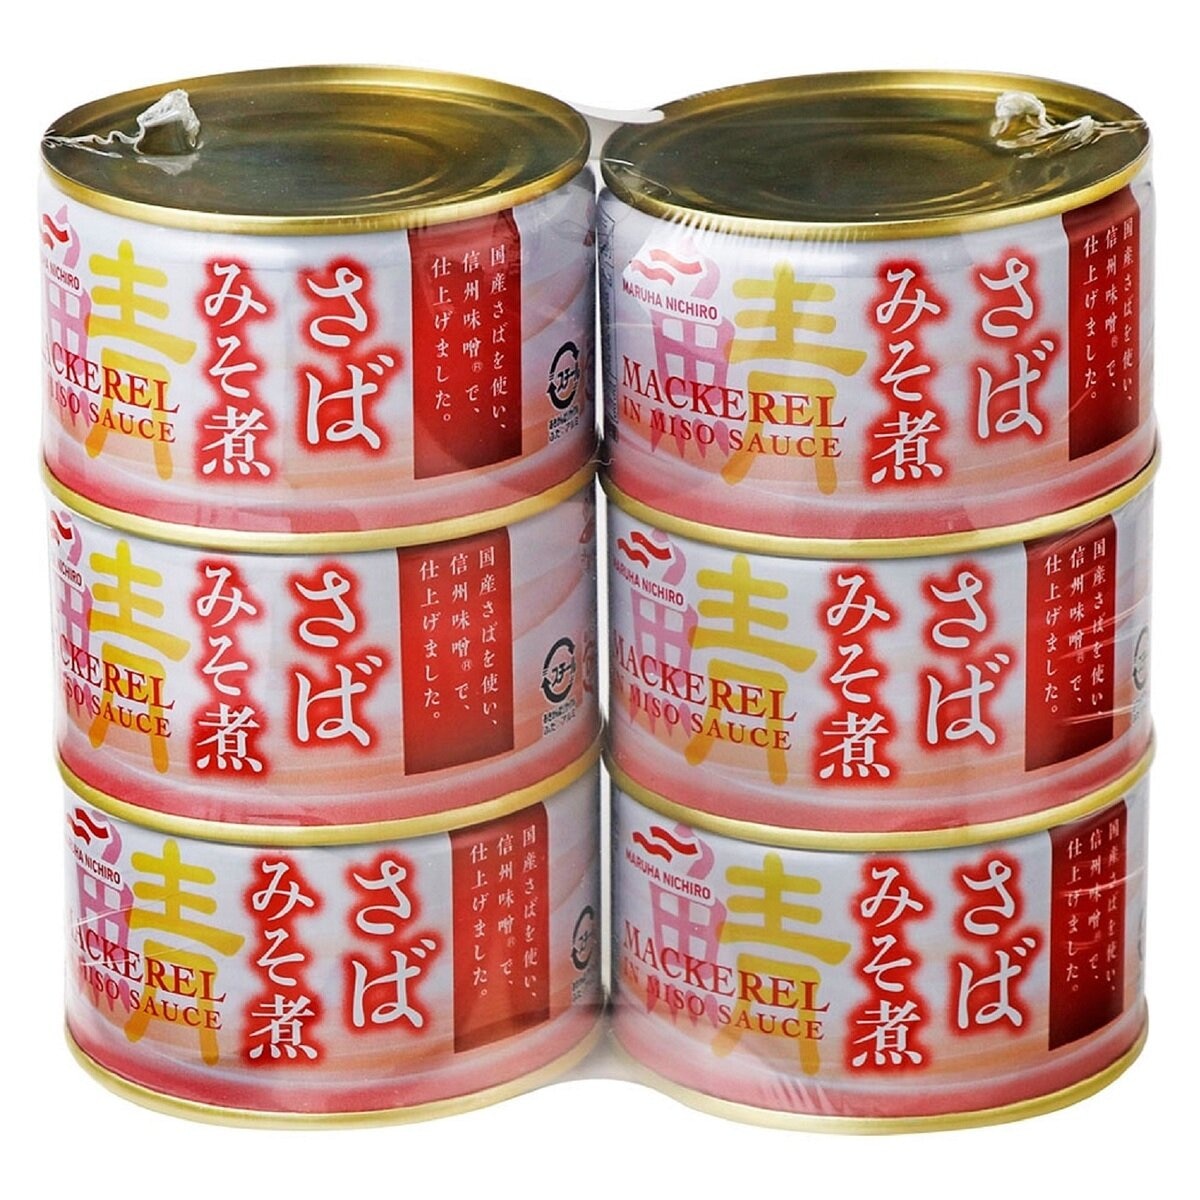 マルハニチロ さばみそ煮 200g x 6缶セット | Costco Japan